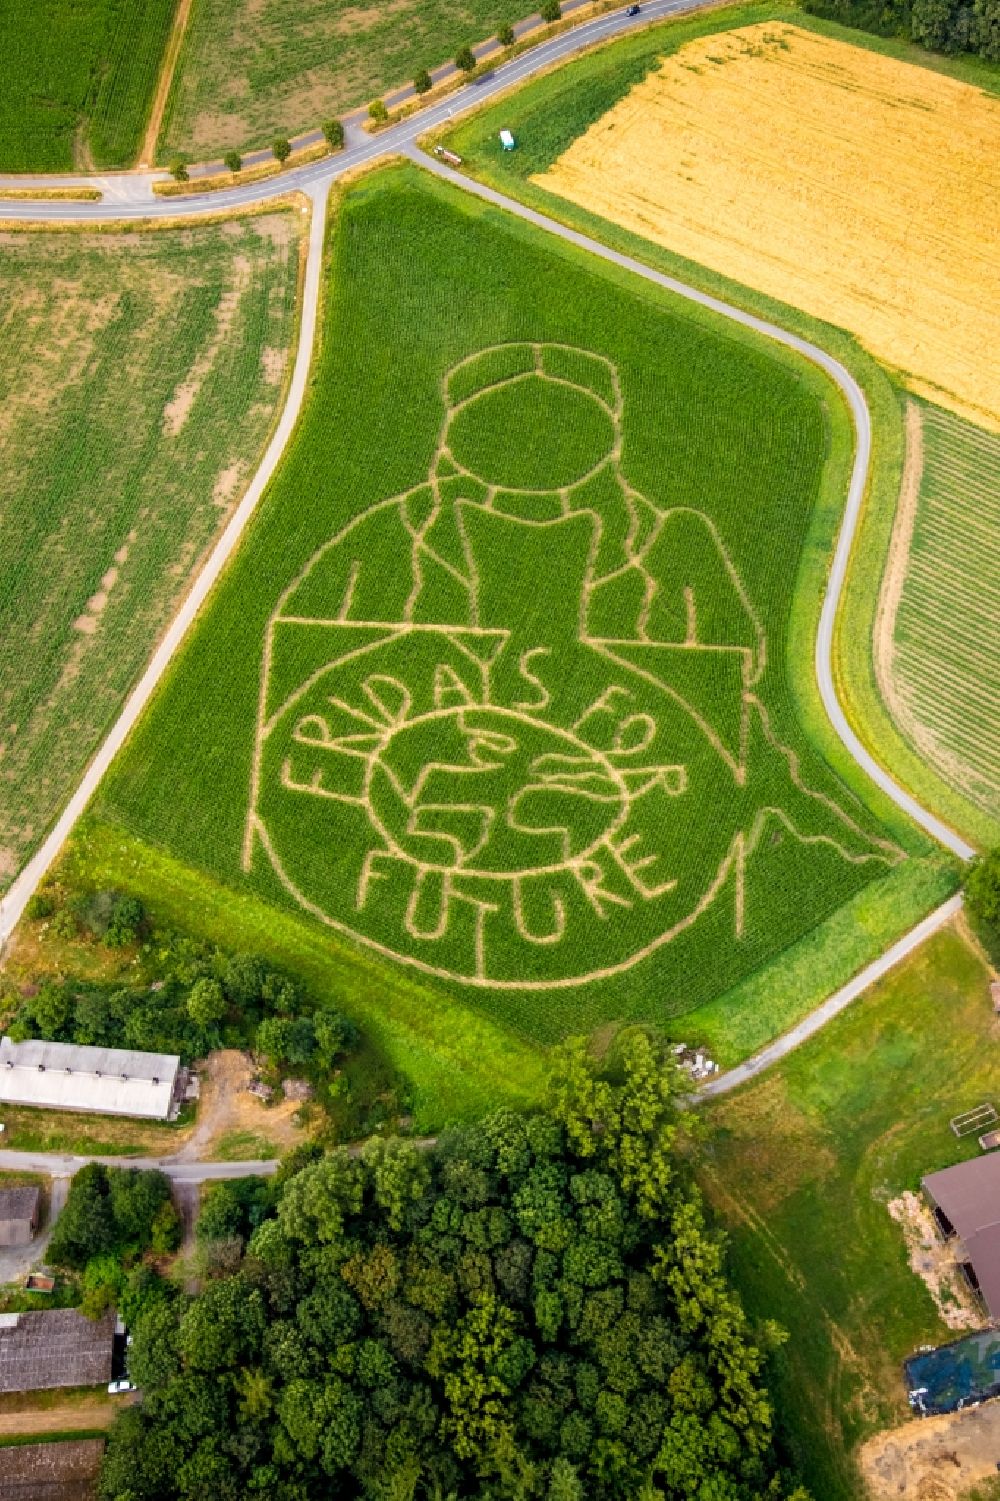 Luftbild Selm - Irrgarten - Labyrinth mit den Umrissen Fridays for future auf einem Feld in Selm im Bundesland Nordrhein-Westfalen, Deutschland